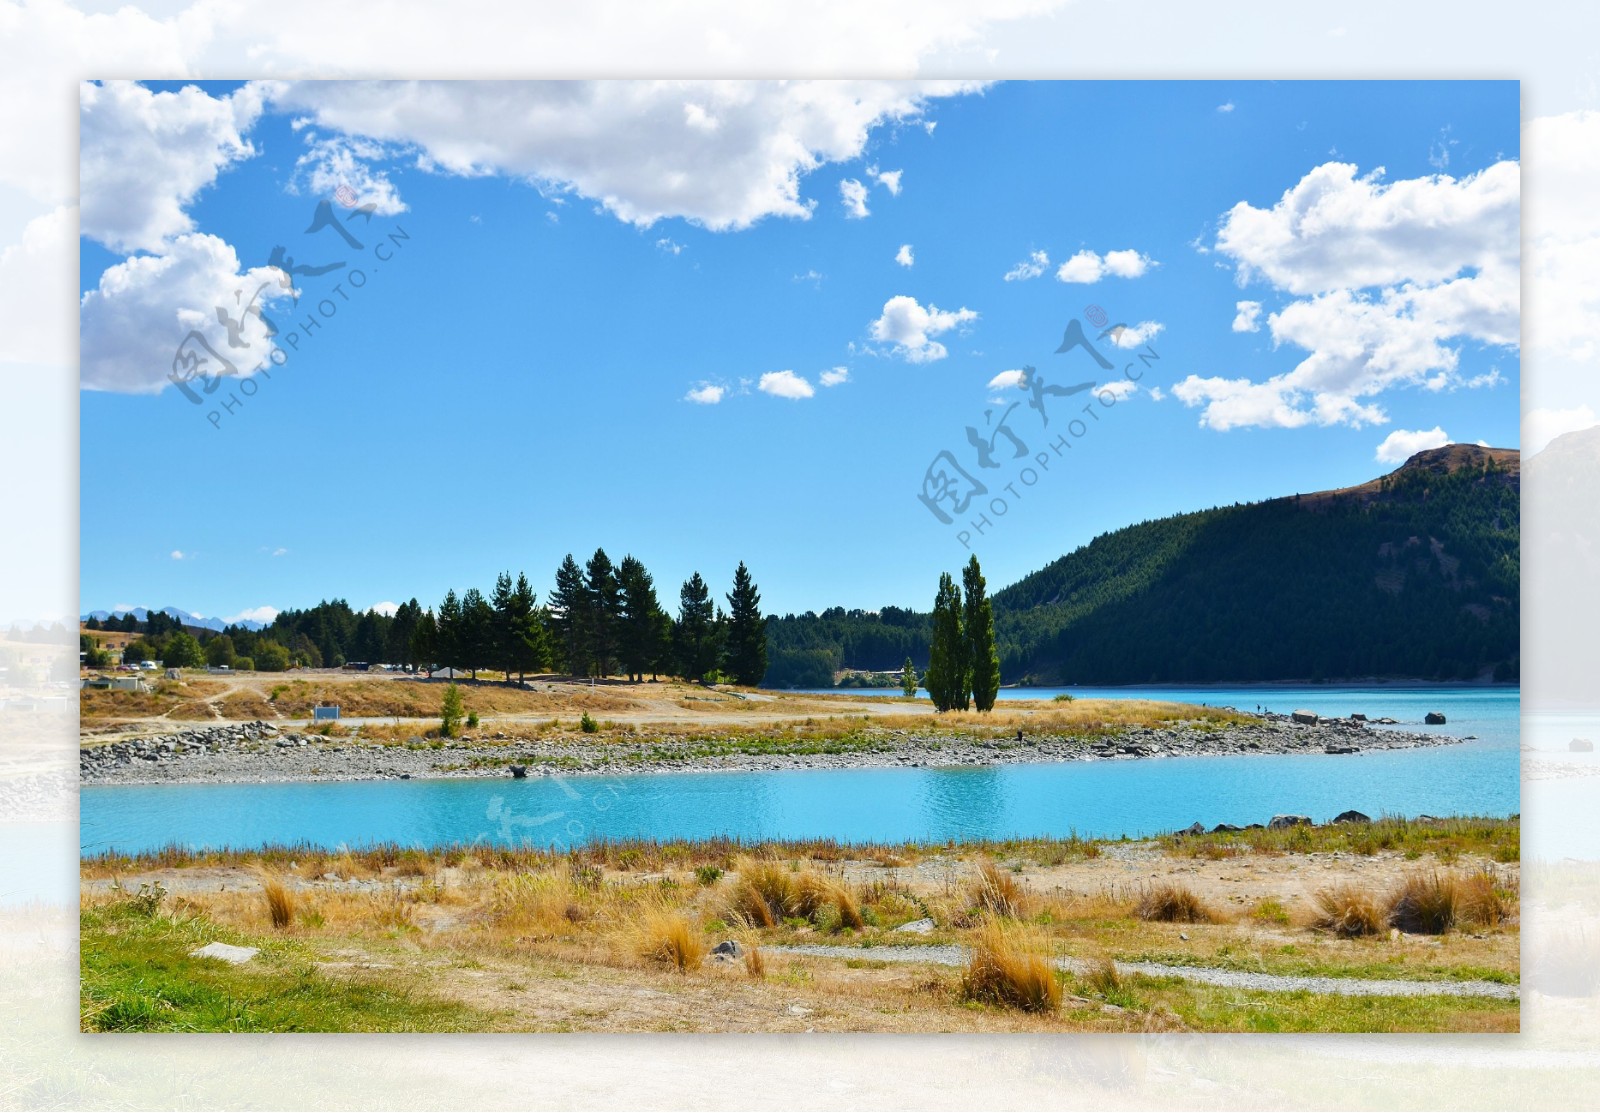 新西兰特卡波湖风景